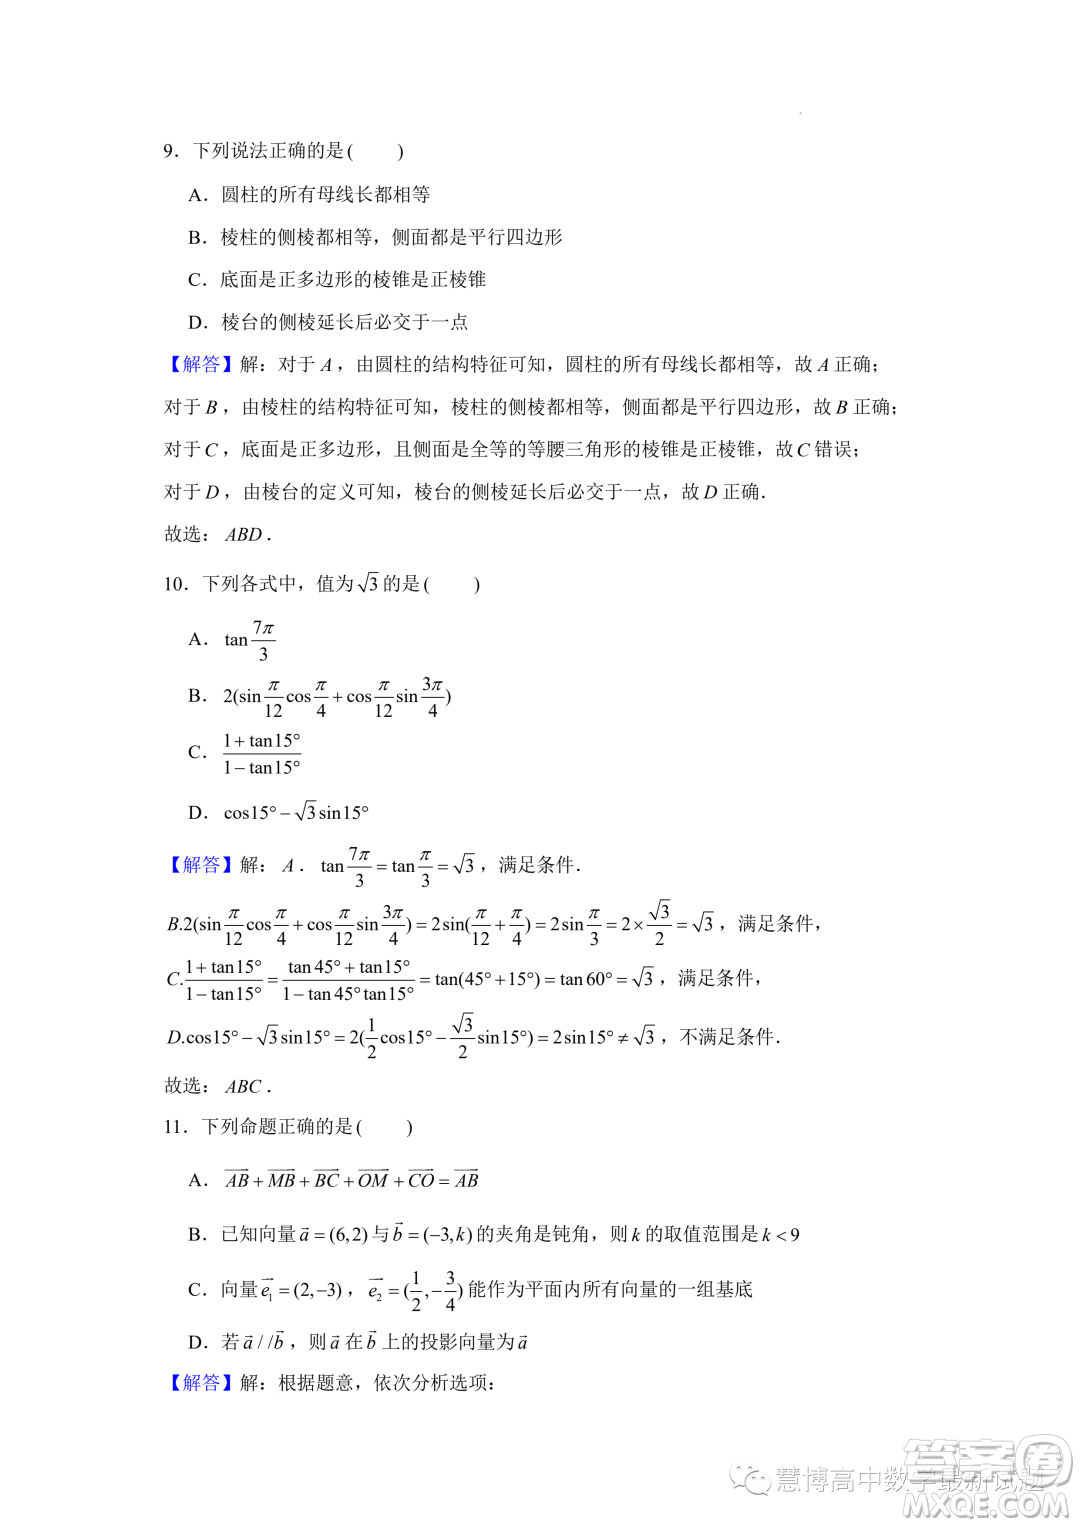 江苏南京师范大学附属实验学校2022-2023高一下学期5月月考数学试卷答案